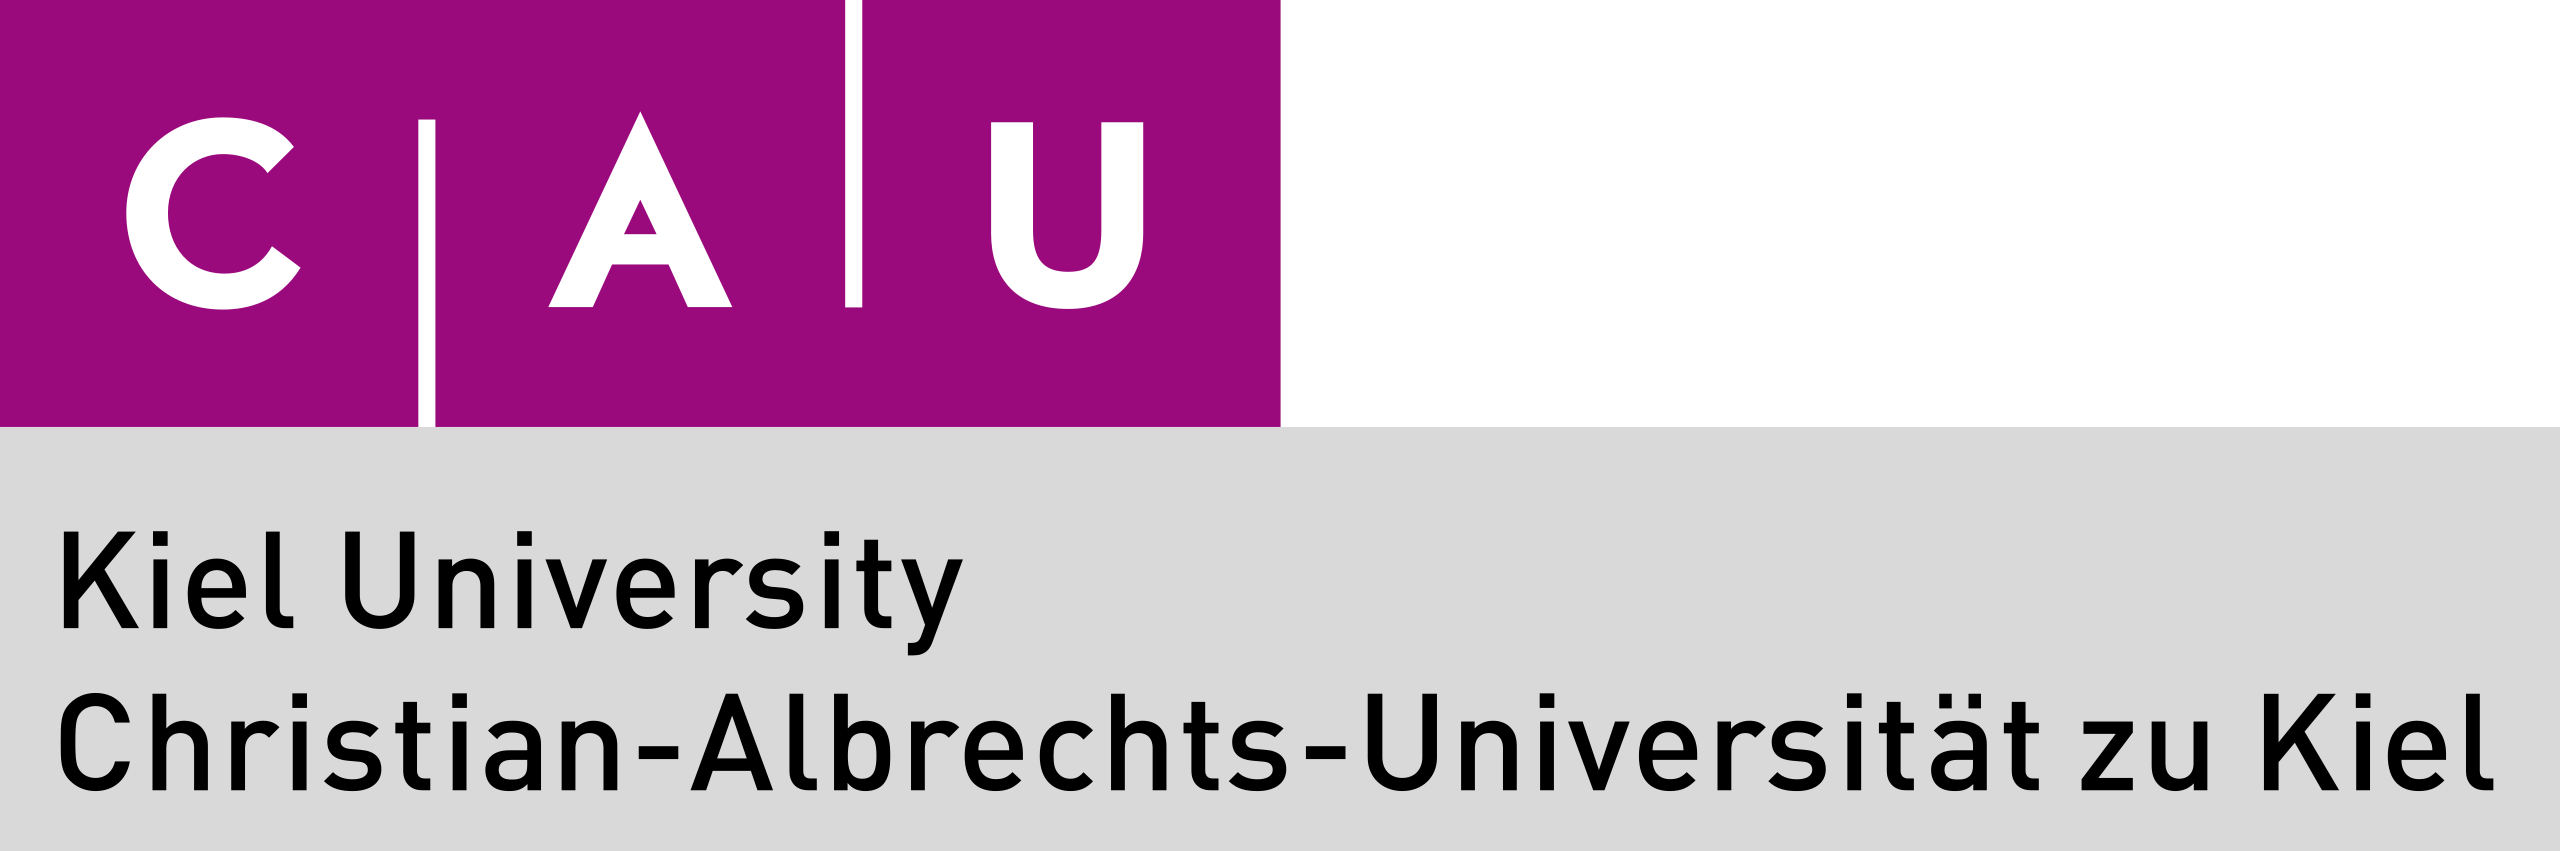 Kiel University Logo